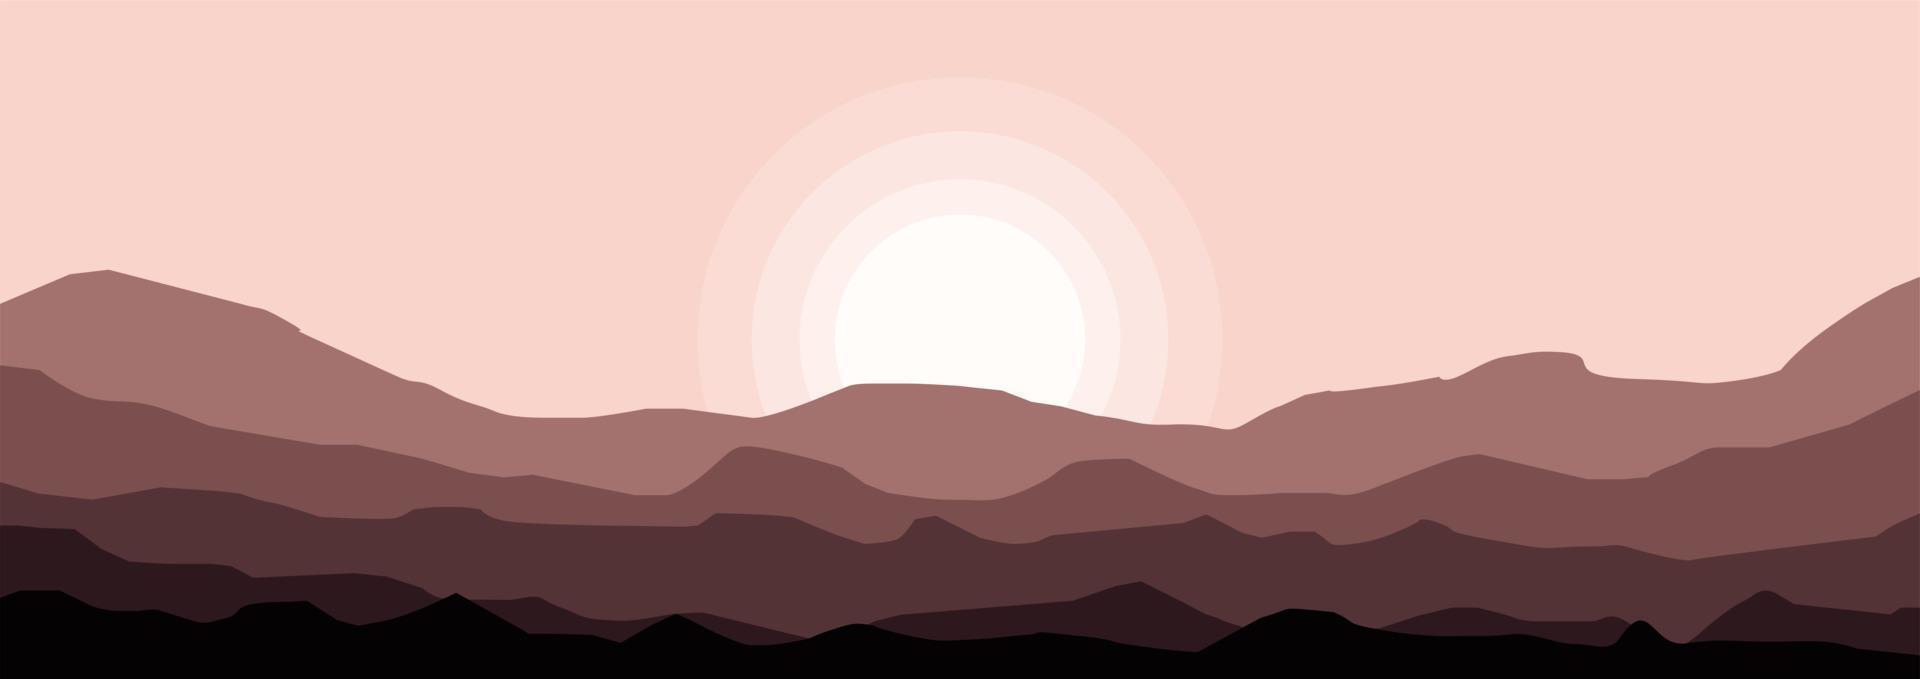 realistisk berg platt landskap vektor illustration. naturlig tapeter är en minimalistisk, polygonal begrepp. soluppgång, dimmig terräng med backar, bergen nära de skog